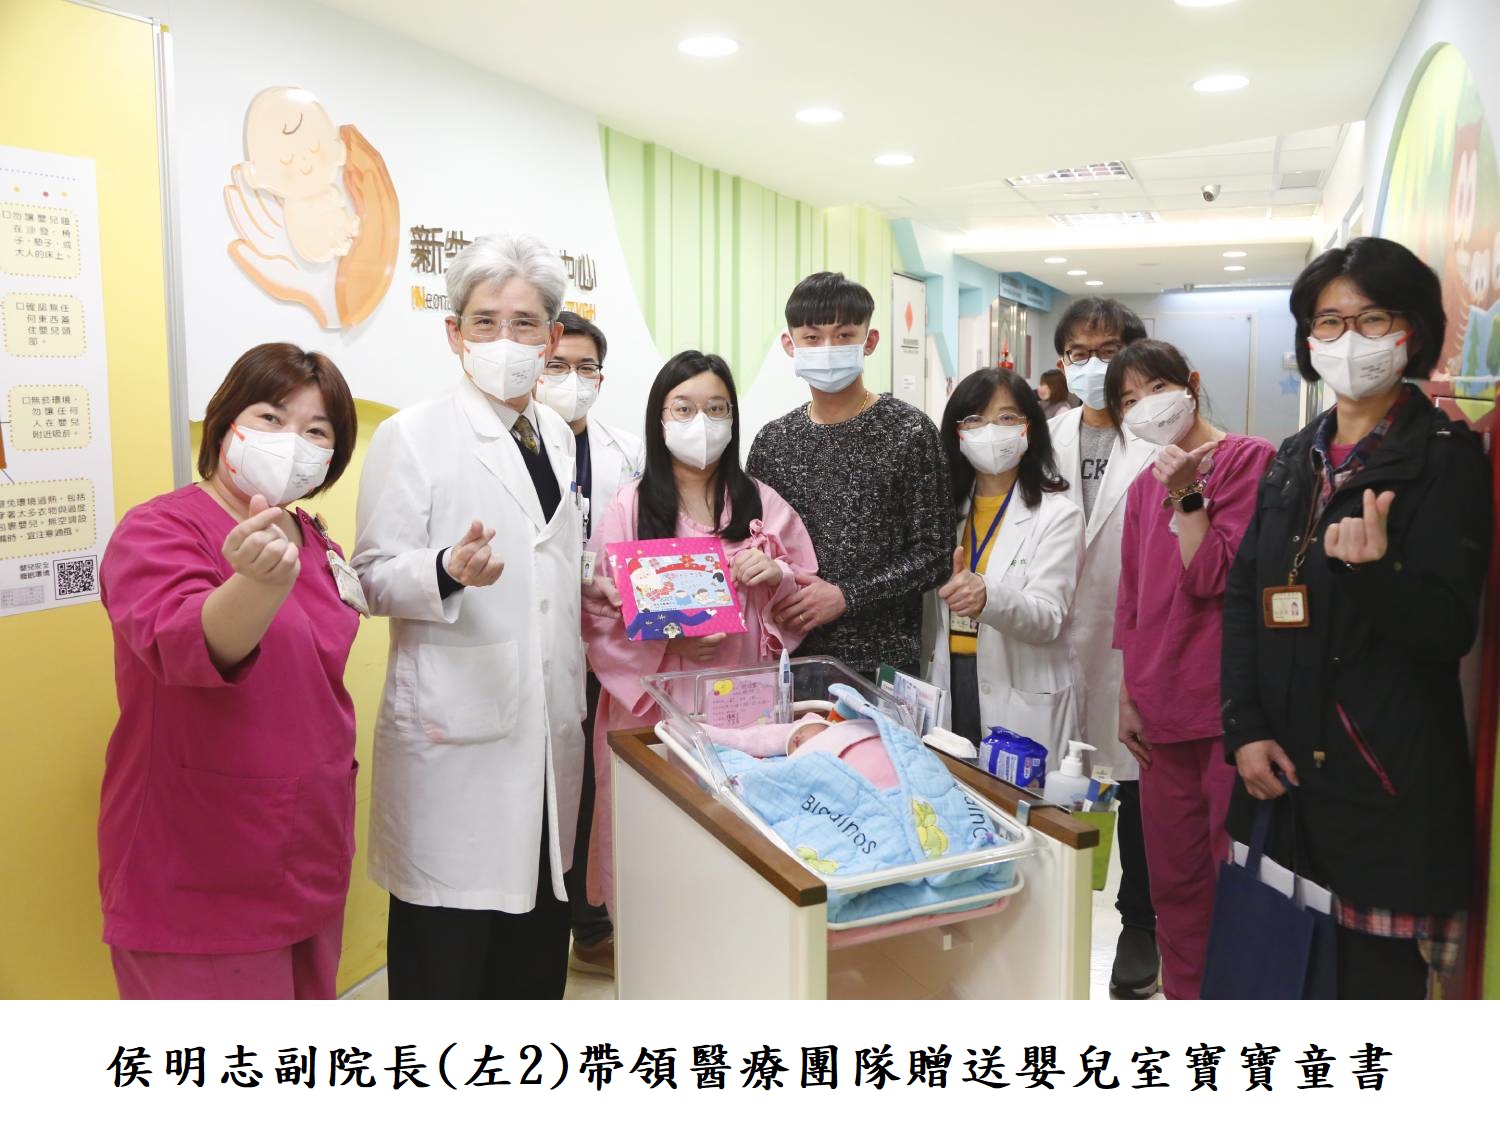 侯明志副院長(左2)帶領醫療團隊贈送嬰兒室寶寶童書